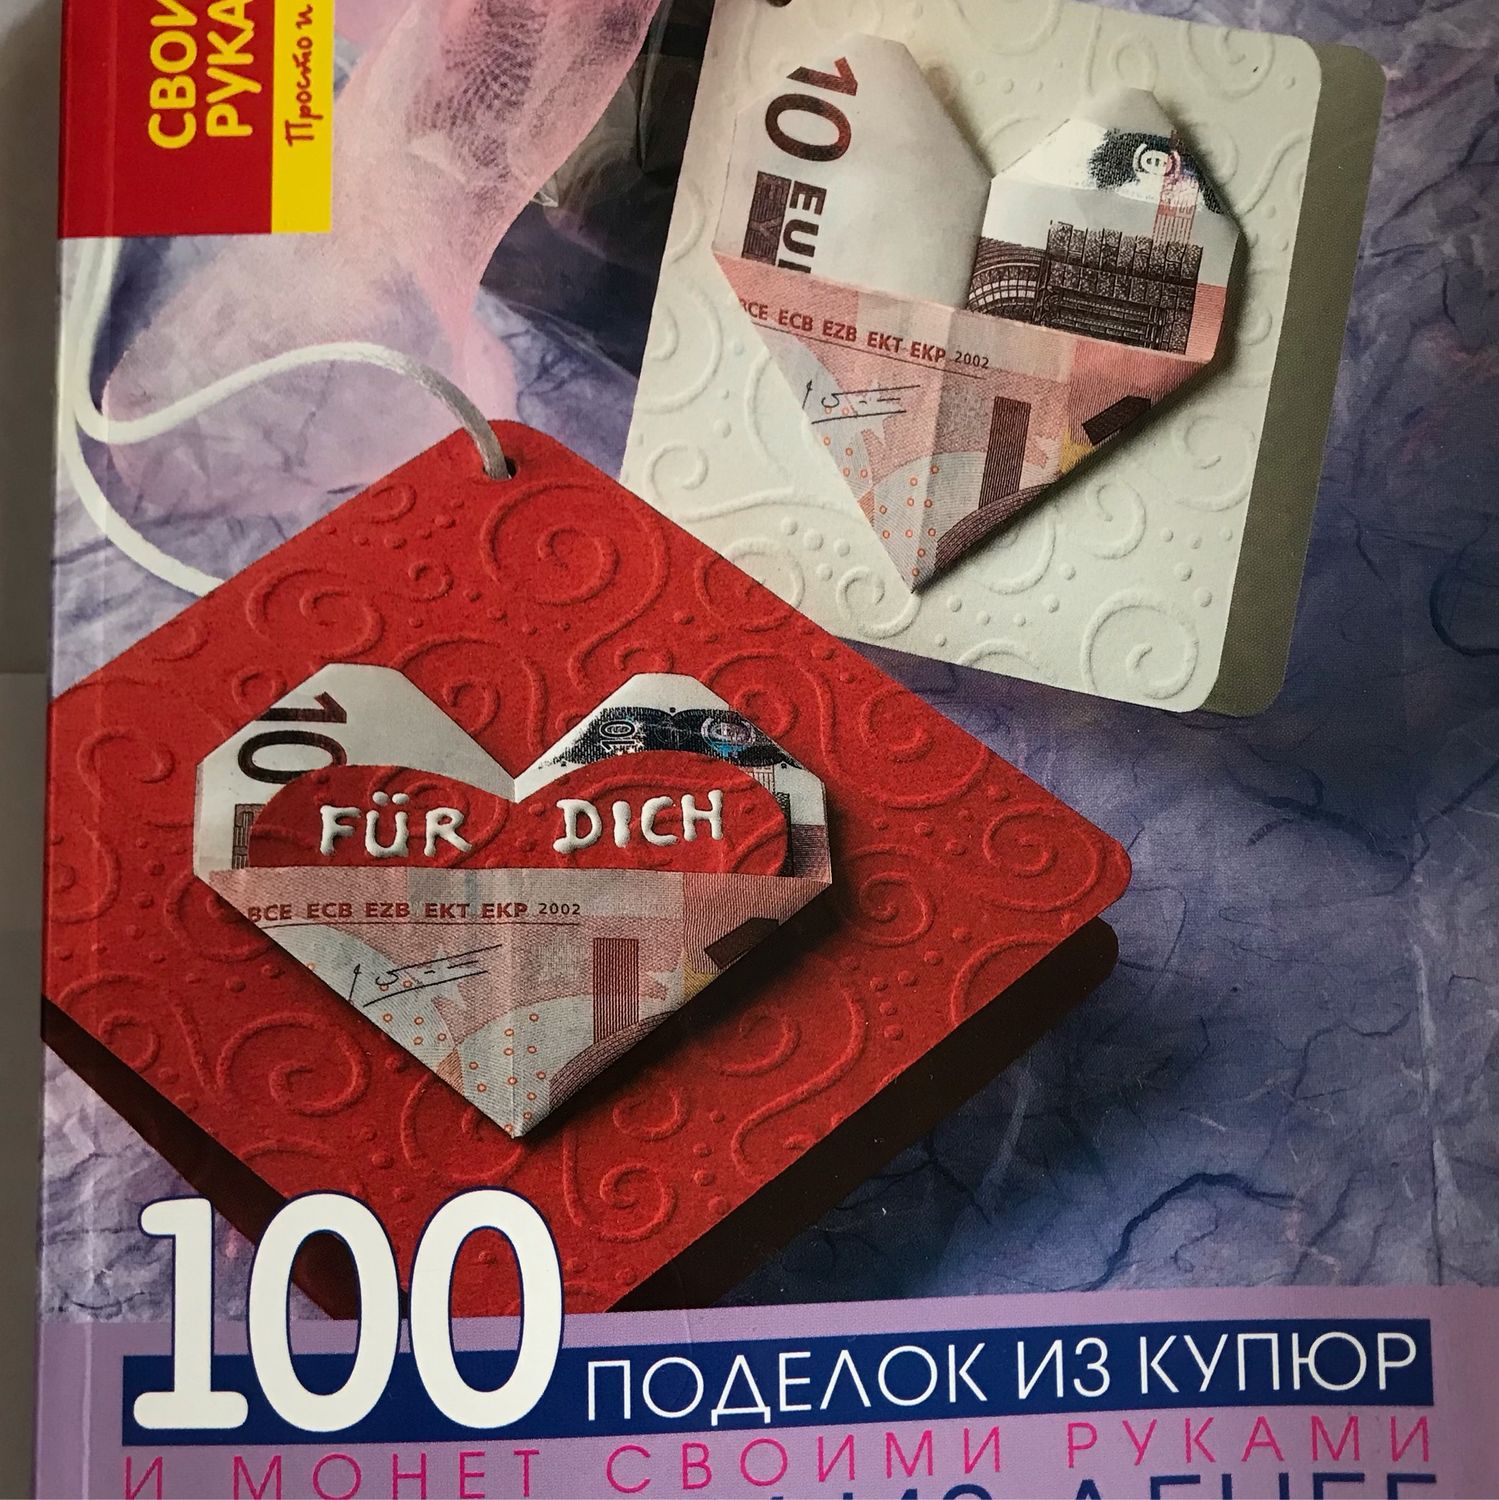 Подарки, сувениры | Листы для монет и купюр в Петербурге.